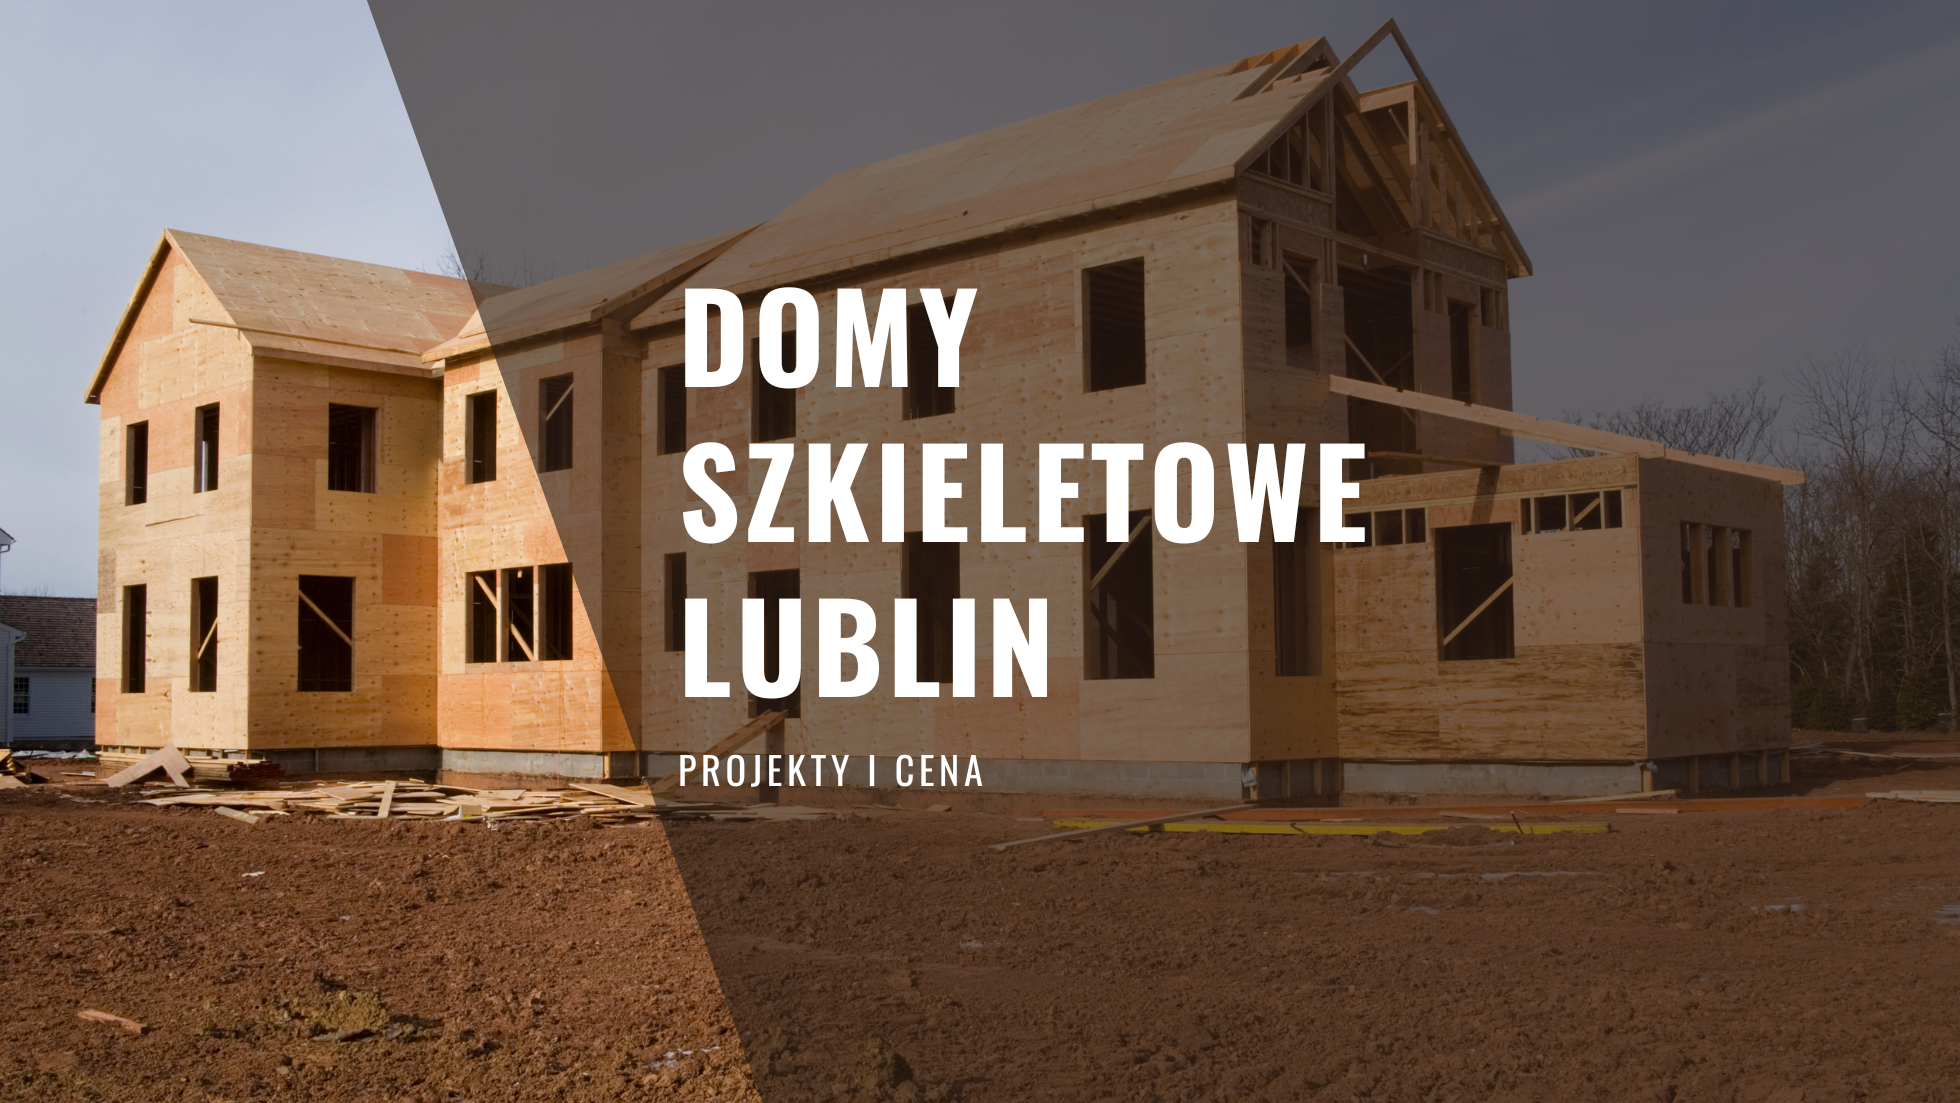 Domy szkieletowe Lublin